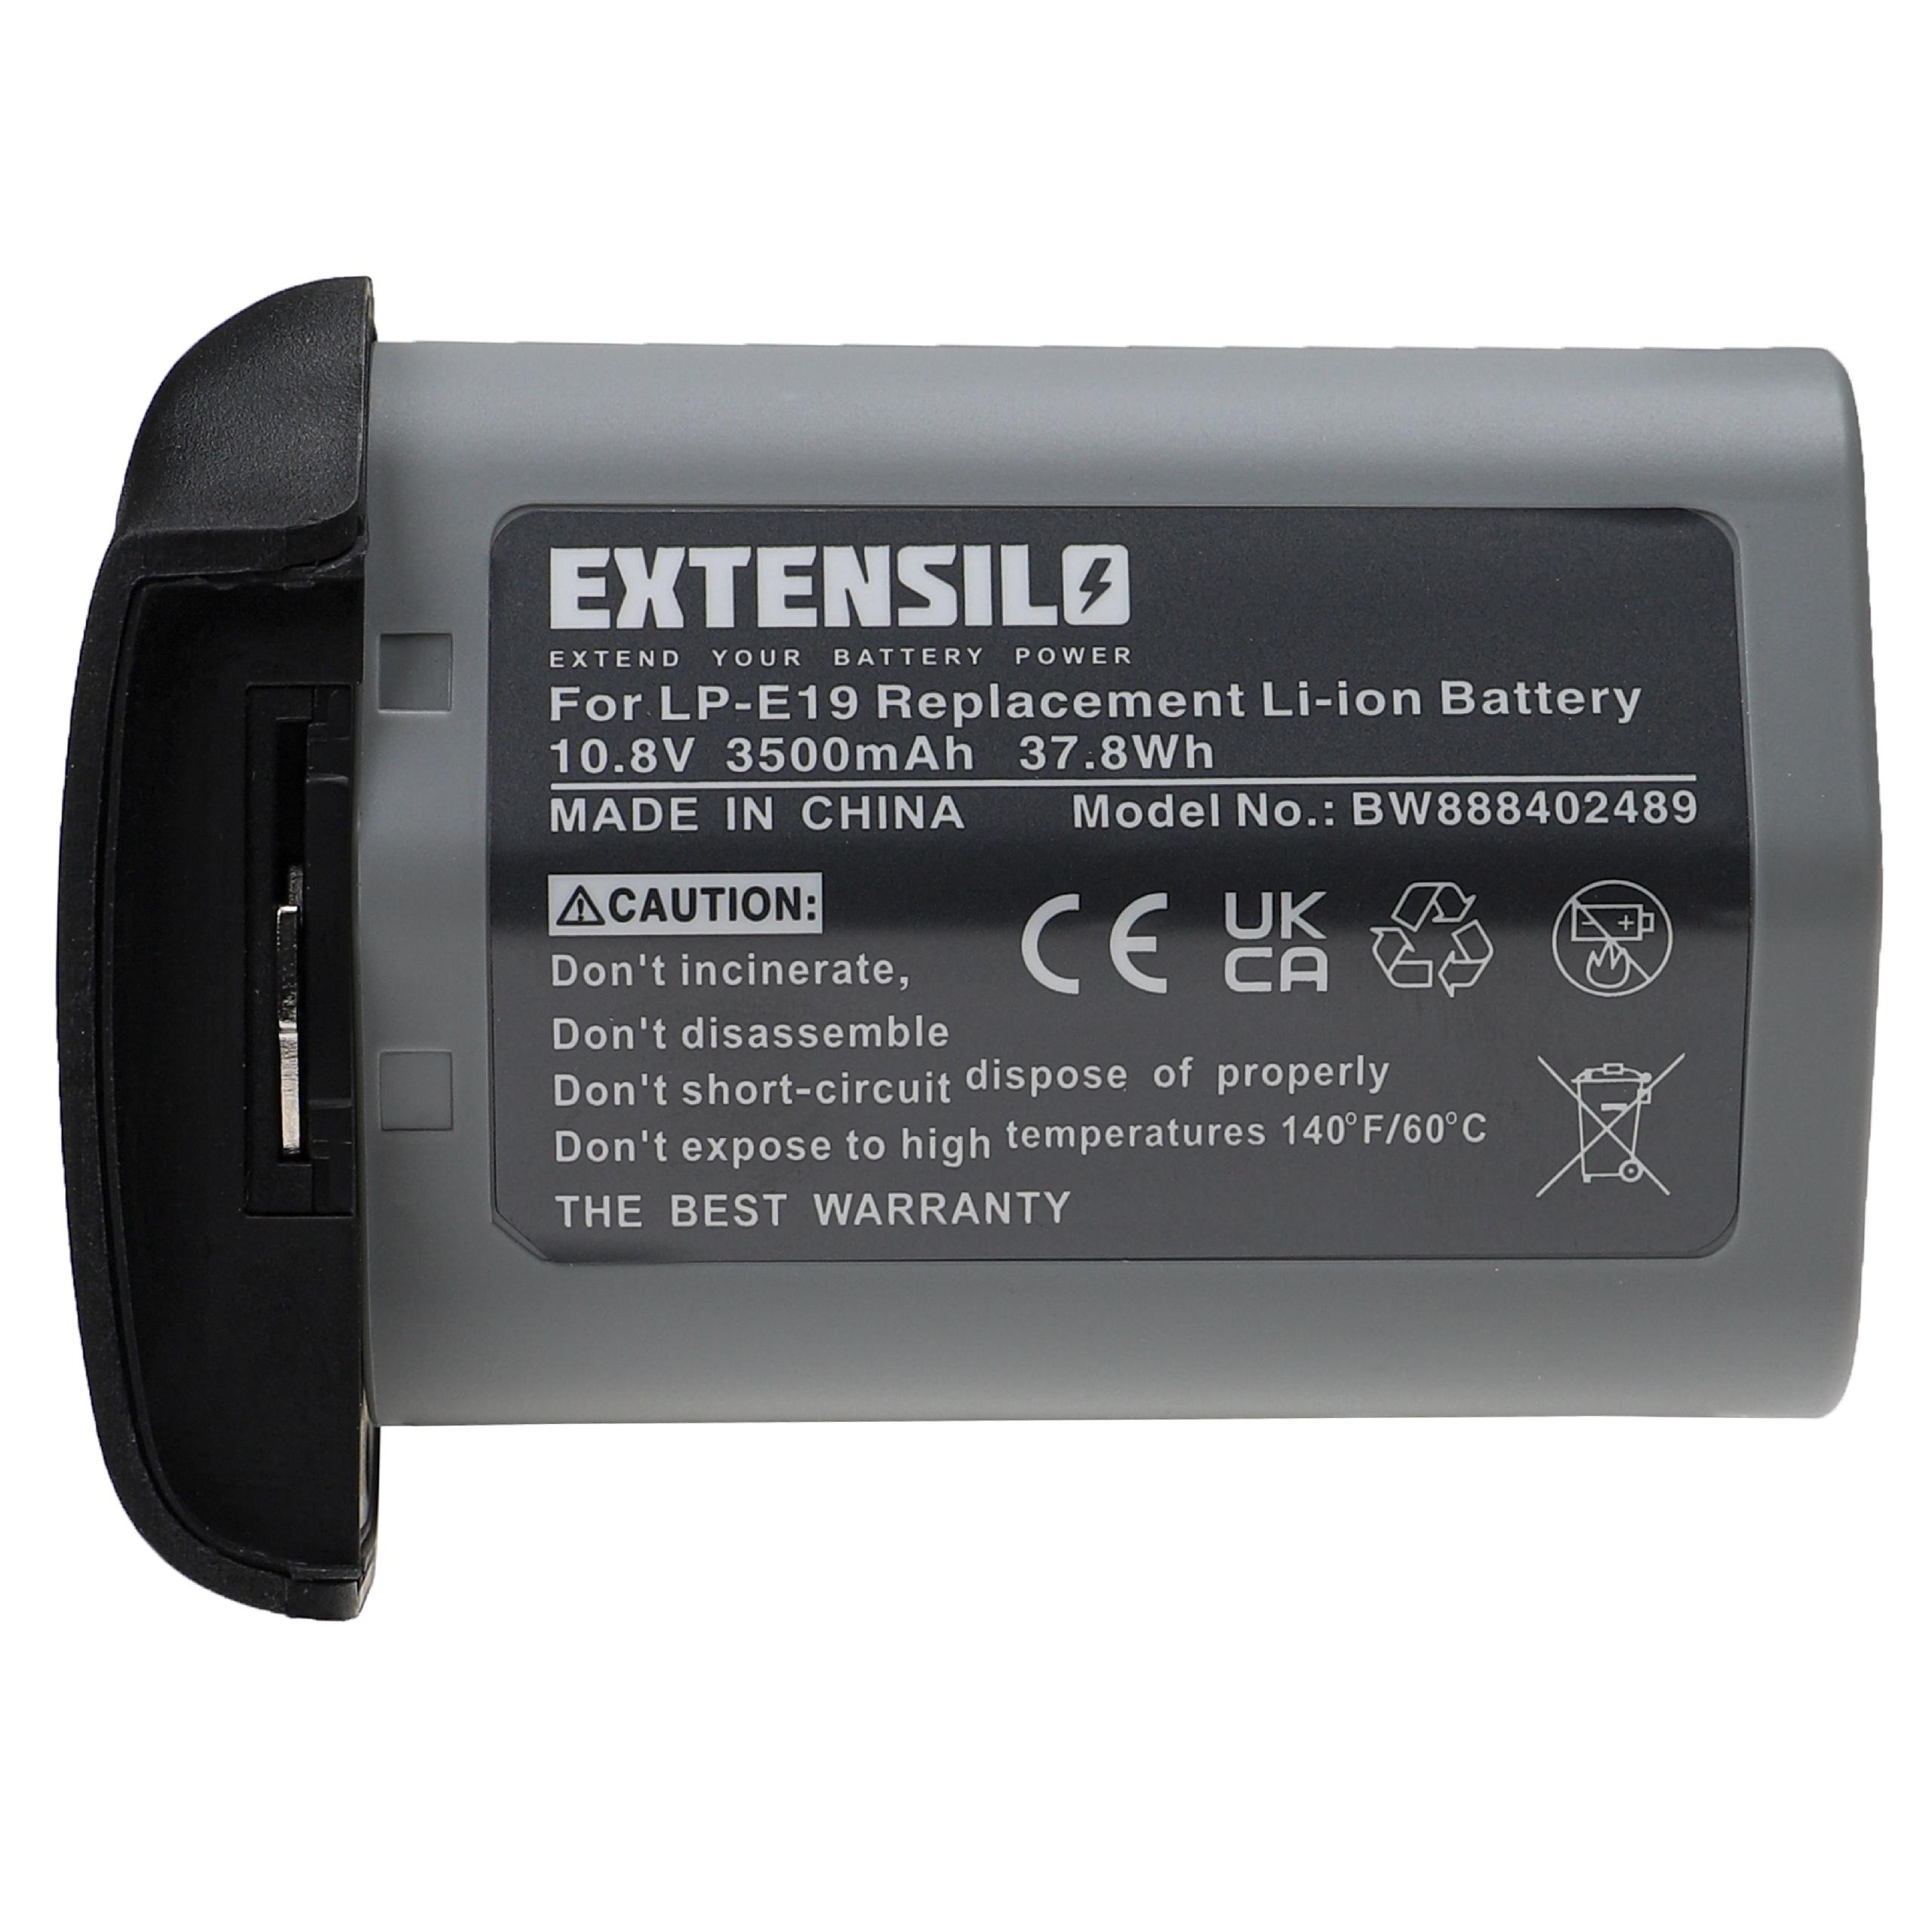 Batterie remplace Canon LP-E19 pour appareil photo - 3500mAh 10,8V Li-ion